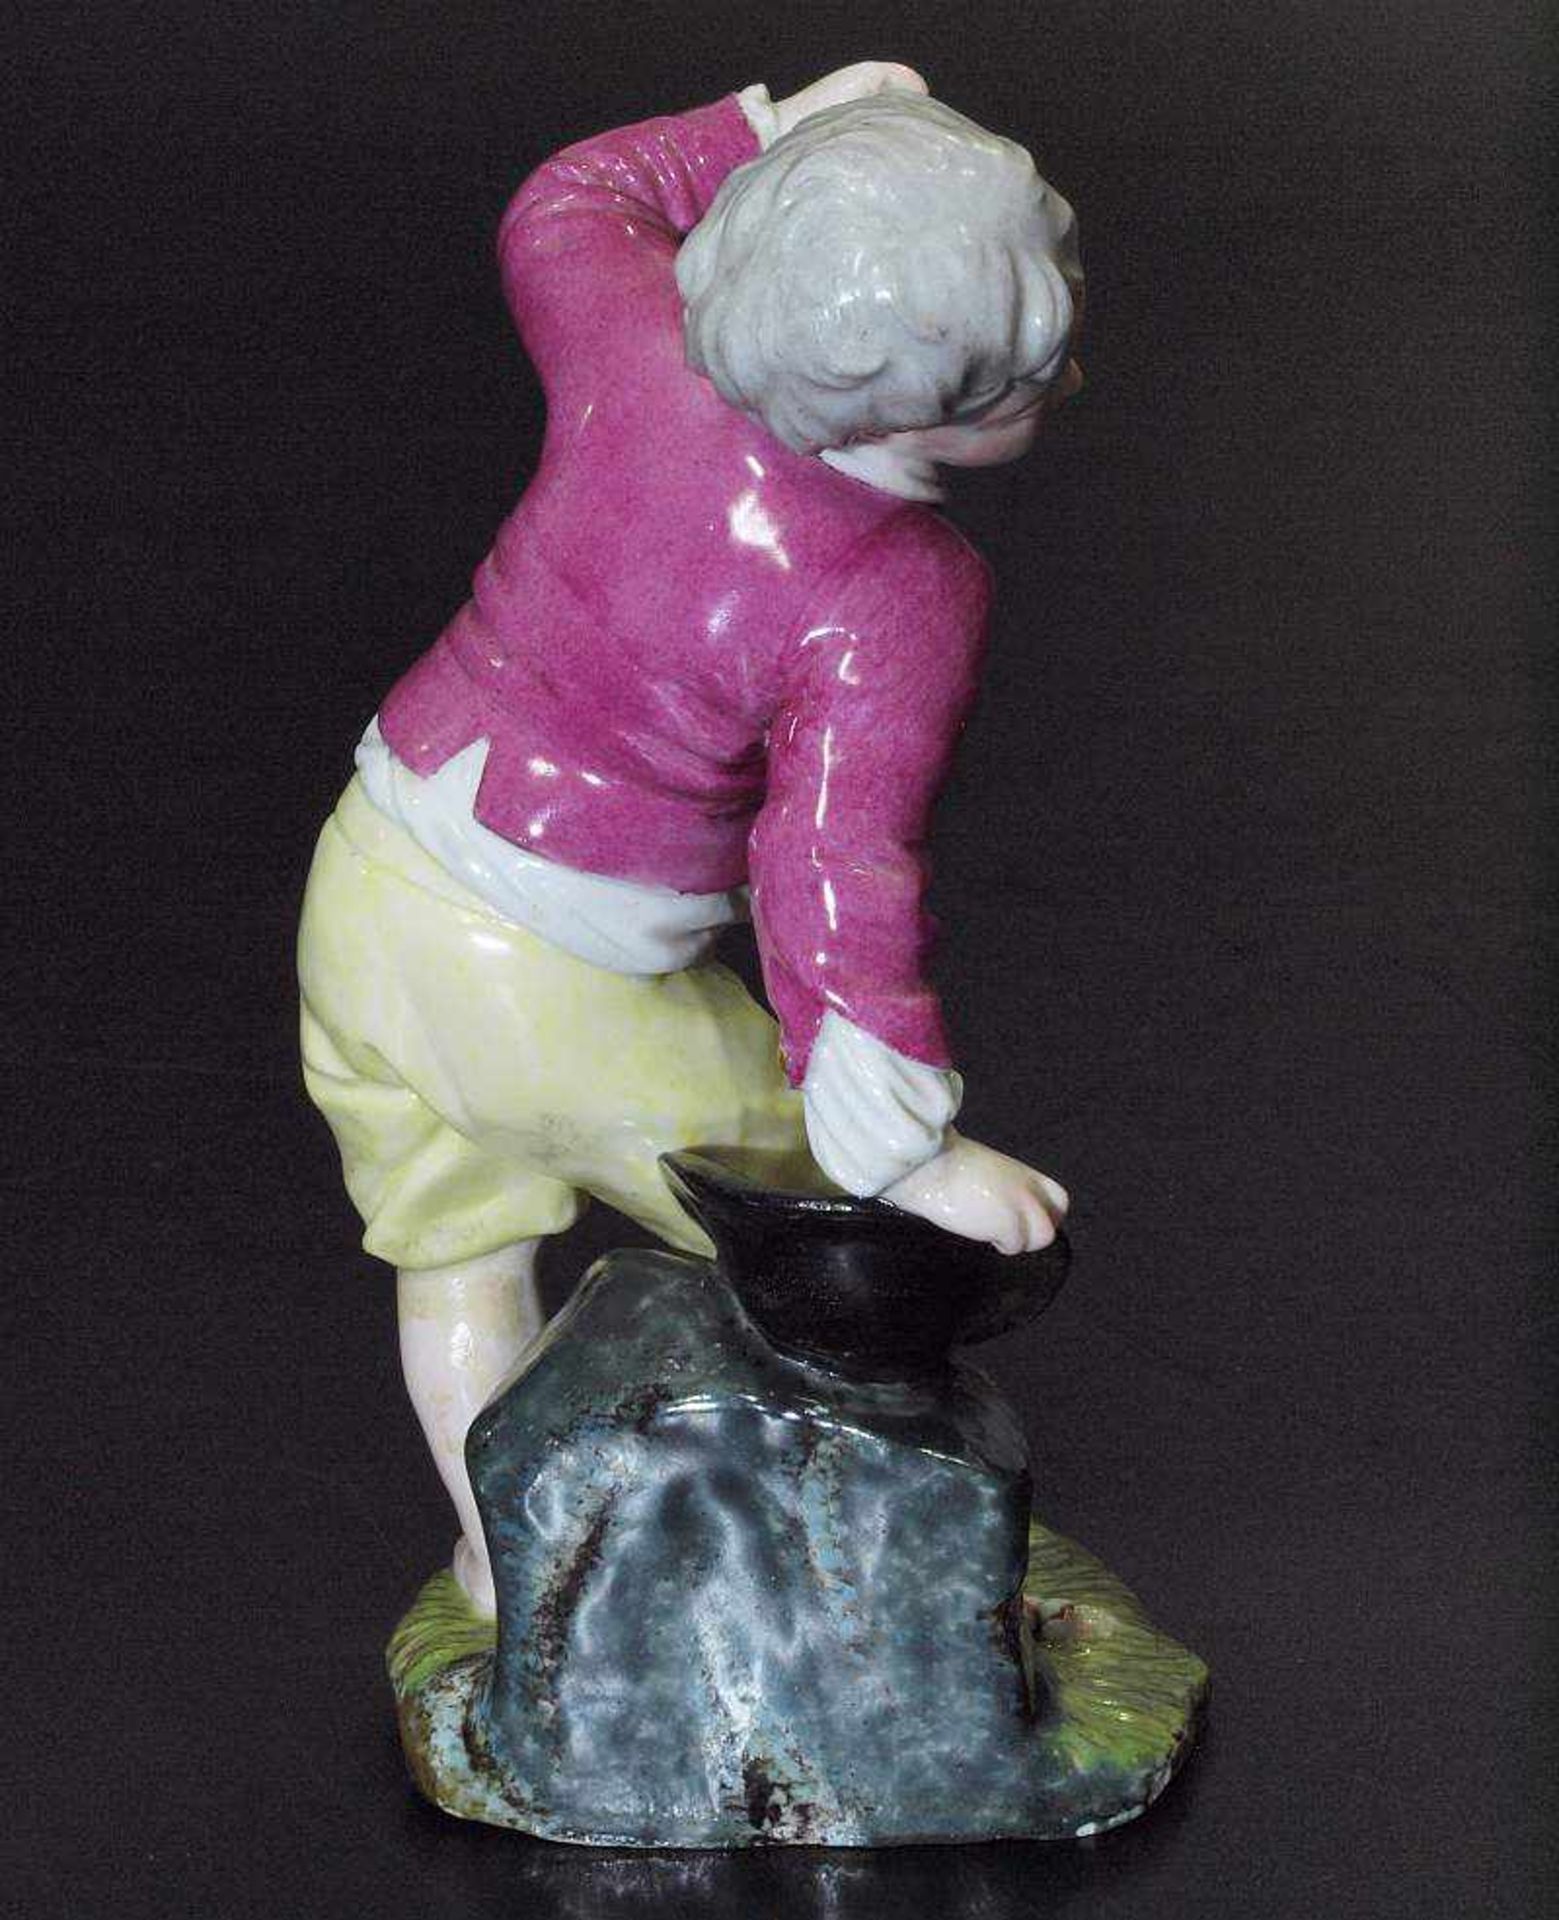 Kinderfigur "Das zerbrochene Ei". Kinderfigur "Das zerbrochene Ei". HÖCHST, Marke 1765 - 1796. - Image 3 of 5